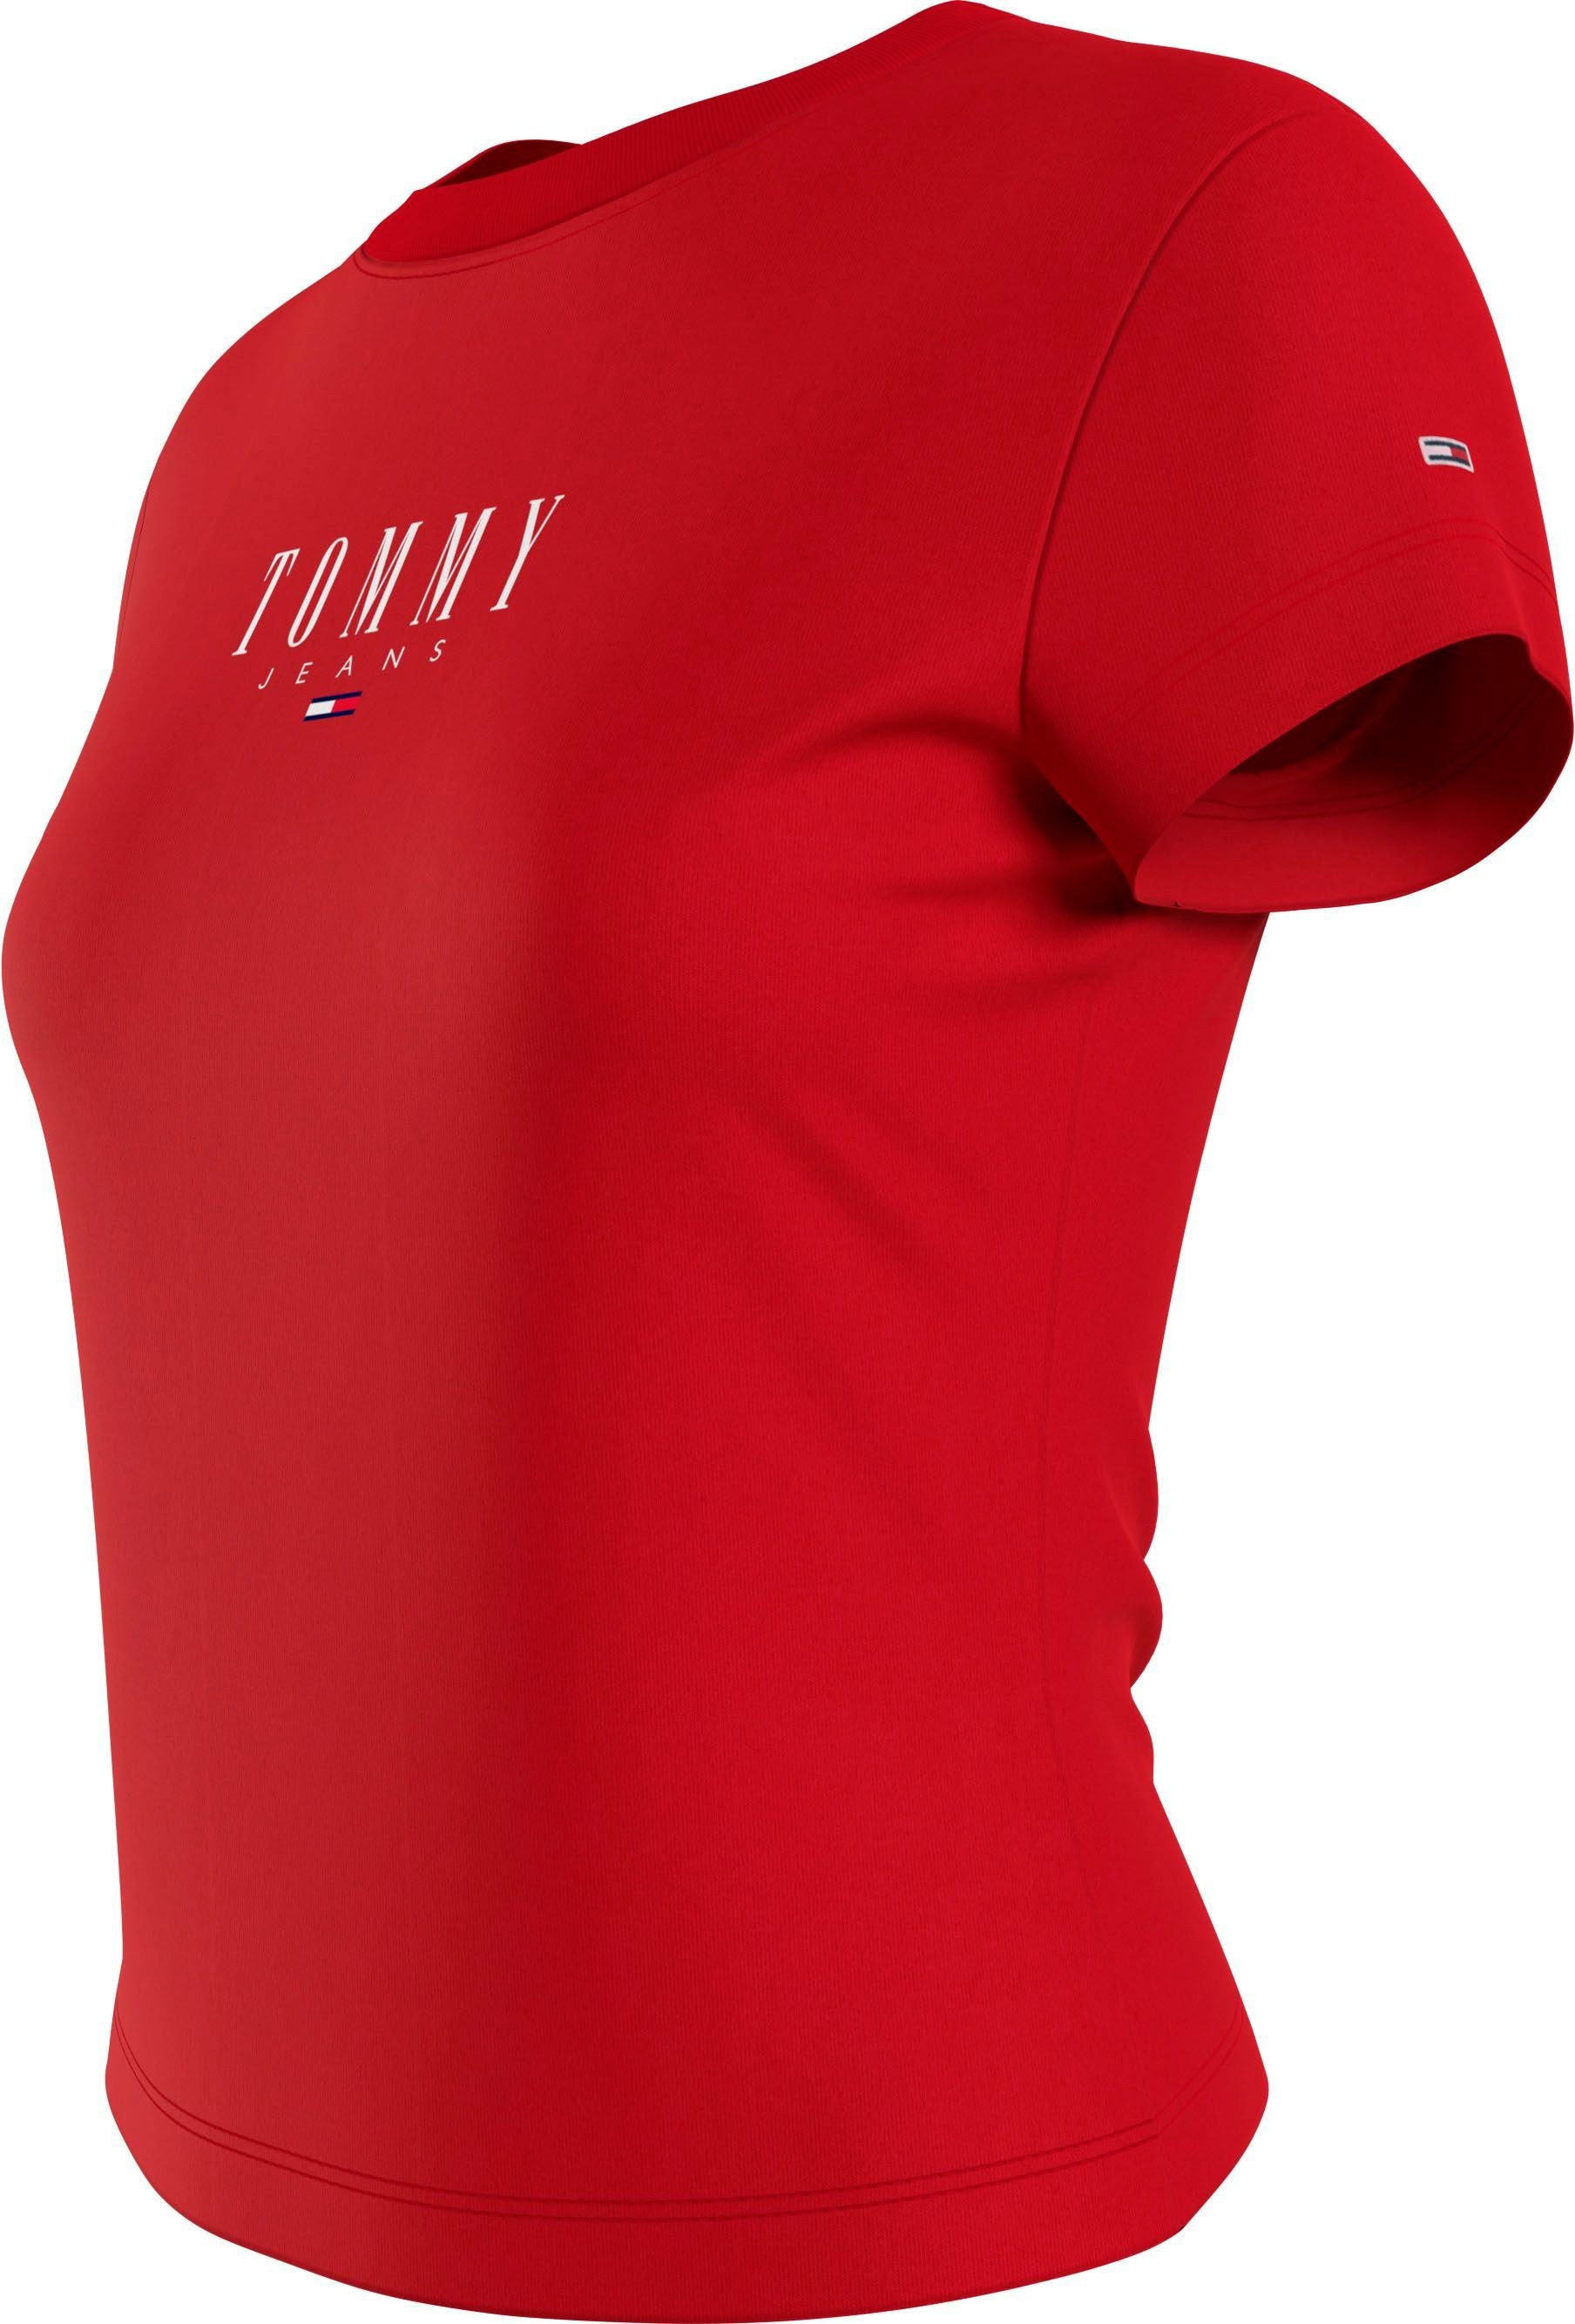 LOGO TJW 2 mit T-Shirt Jeans und Logodruck ESSENTIAL BBY Logostickerei Tommy Deep-Crimson